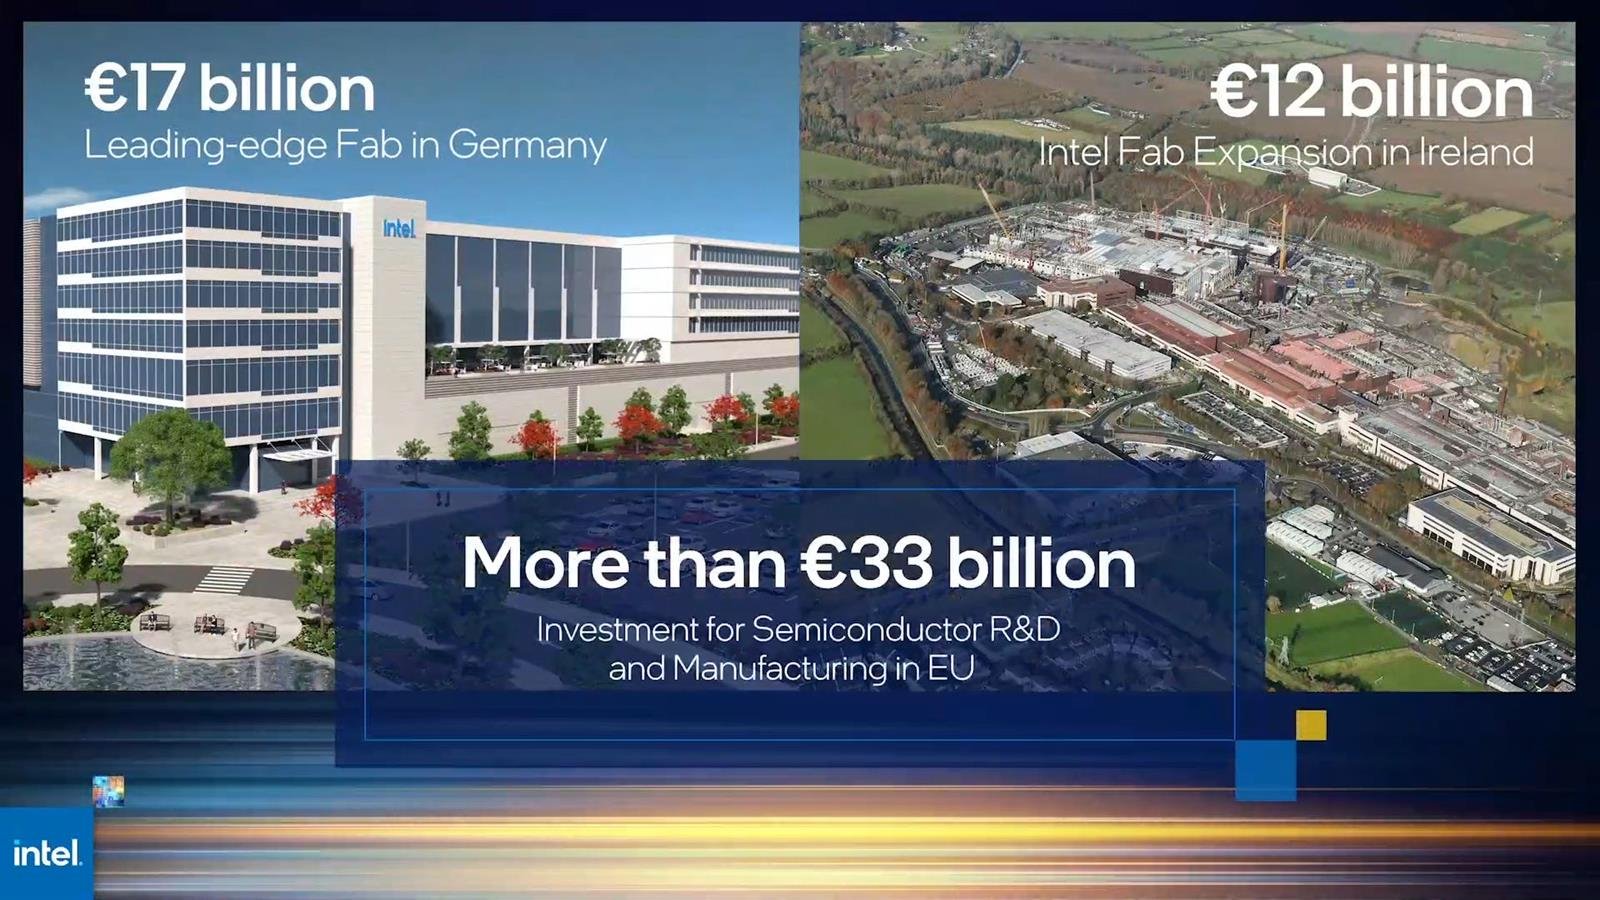 Fabryka Intela w Europie, szczegóły inwestycji w Polsce, Intel w Polsce